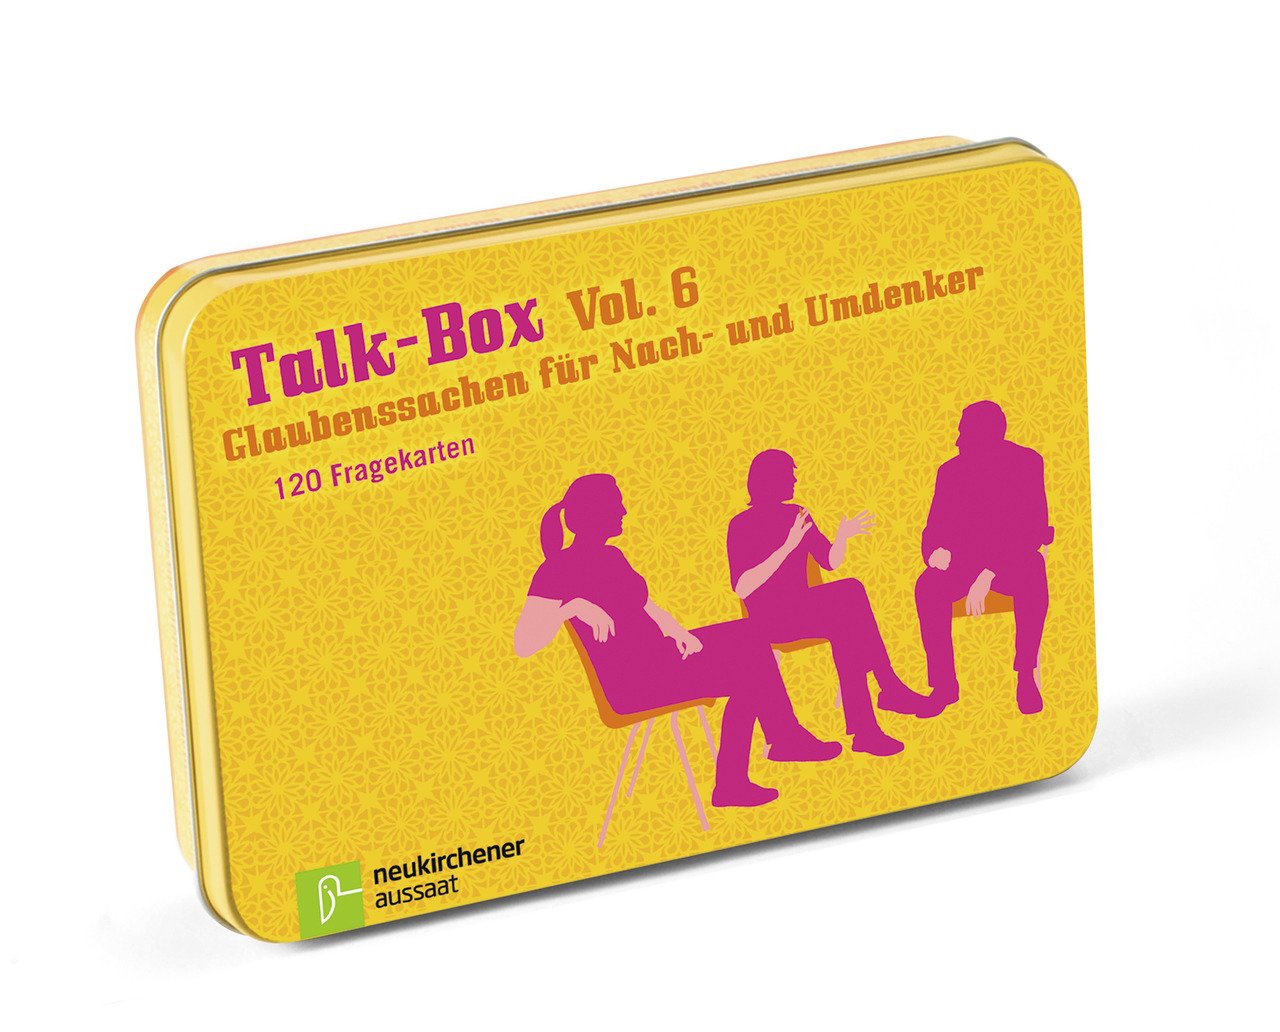 Talk-Box Vol. 6 - Glaubenssachen für Nach- und Umdenker - Cover